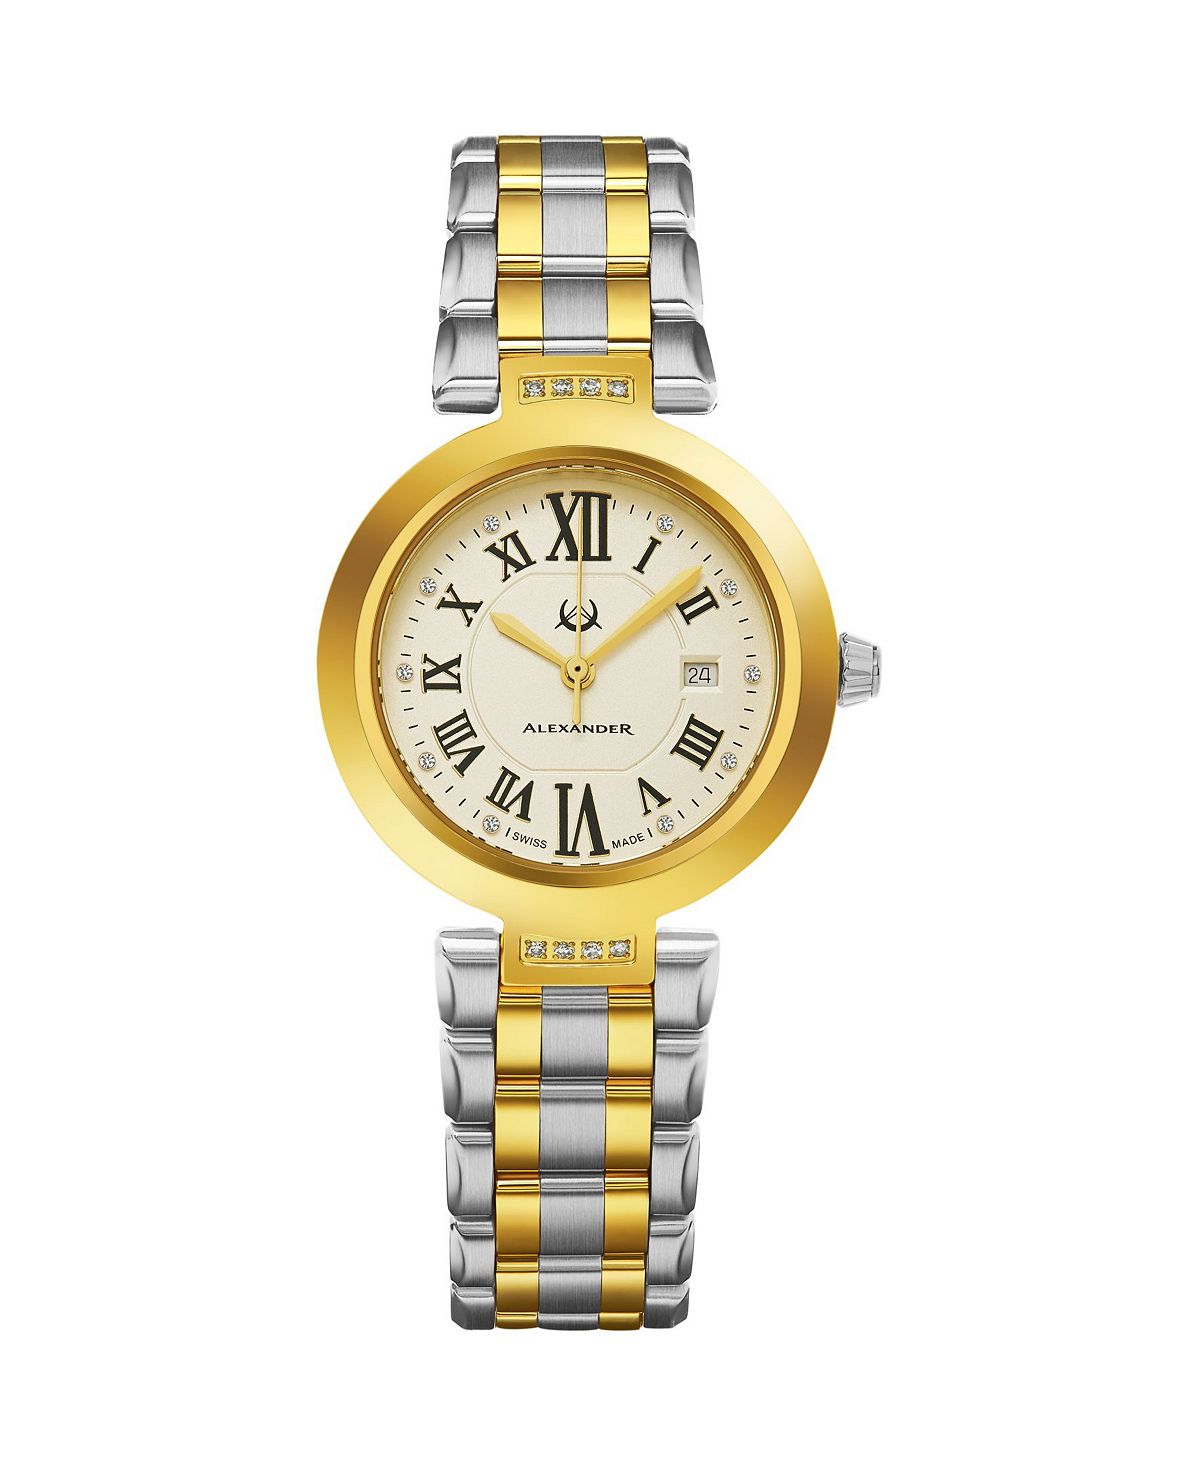 Женские часы Швейцария Monarch. Aleksander Sternen женские часы. Часы Alexander Milton Nakos купить. Магазин часы александров